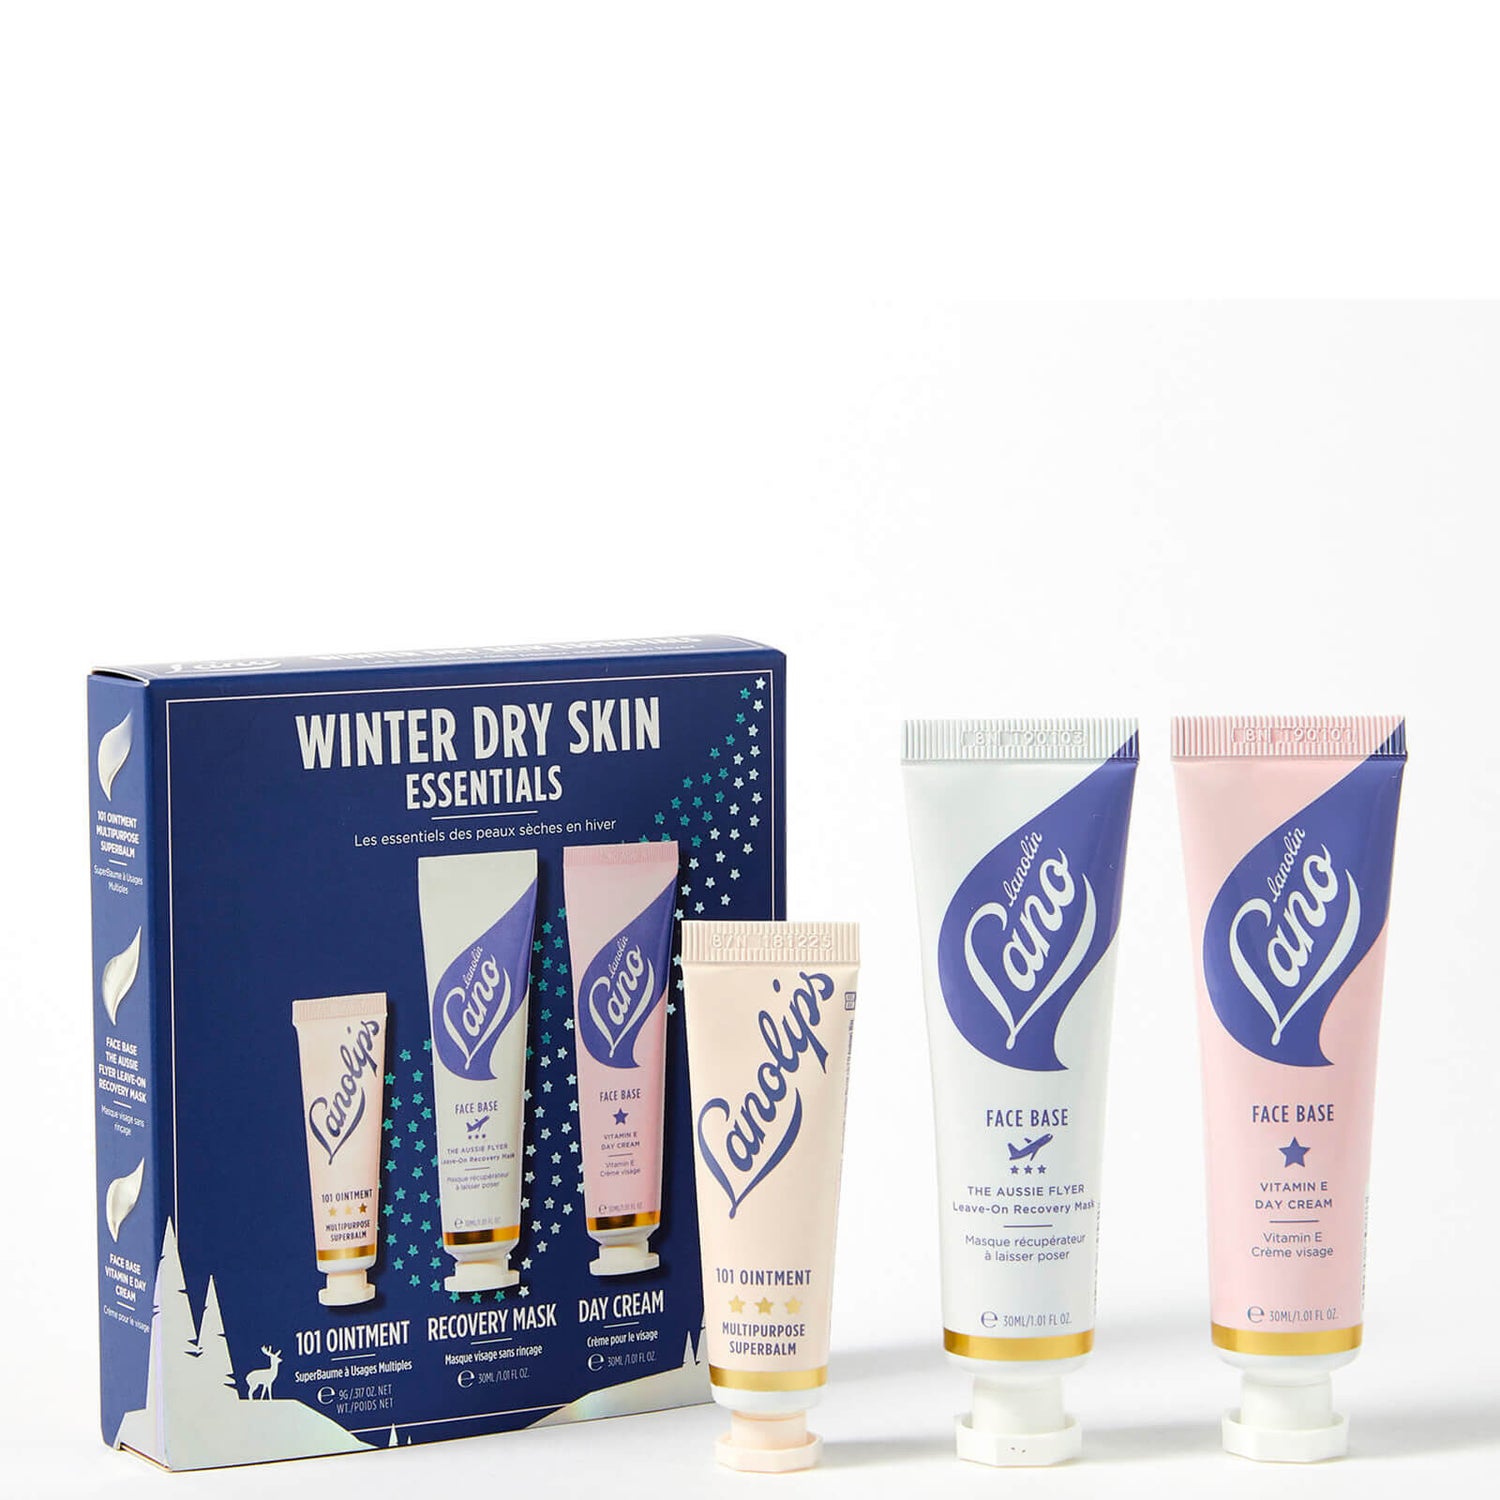 Lanolips Winter Dry Skin Essentials Set (Worth £26.59)